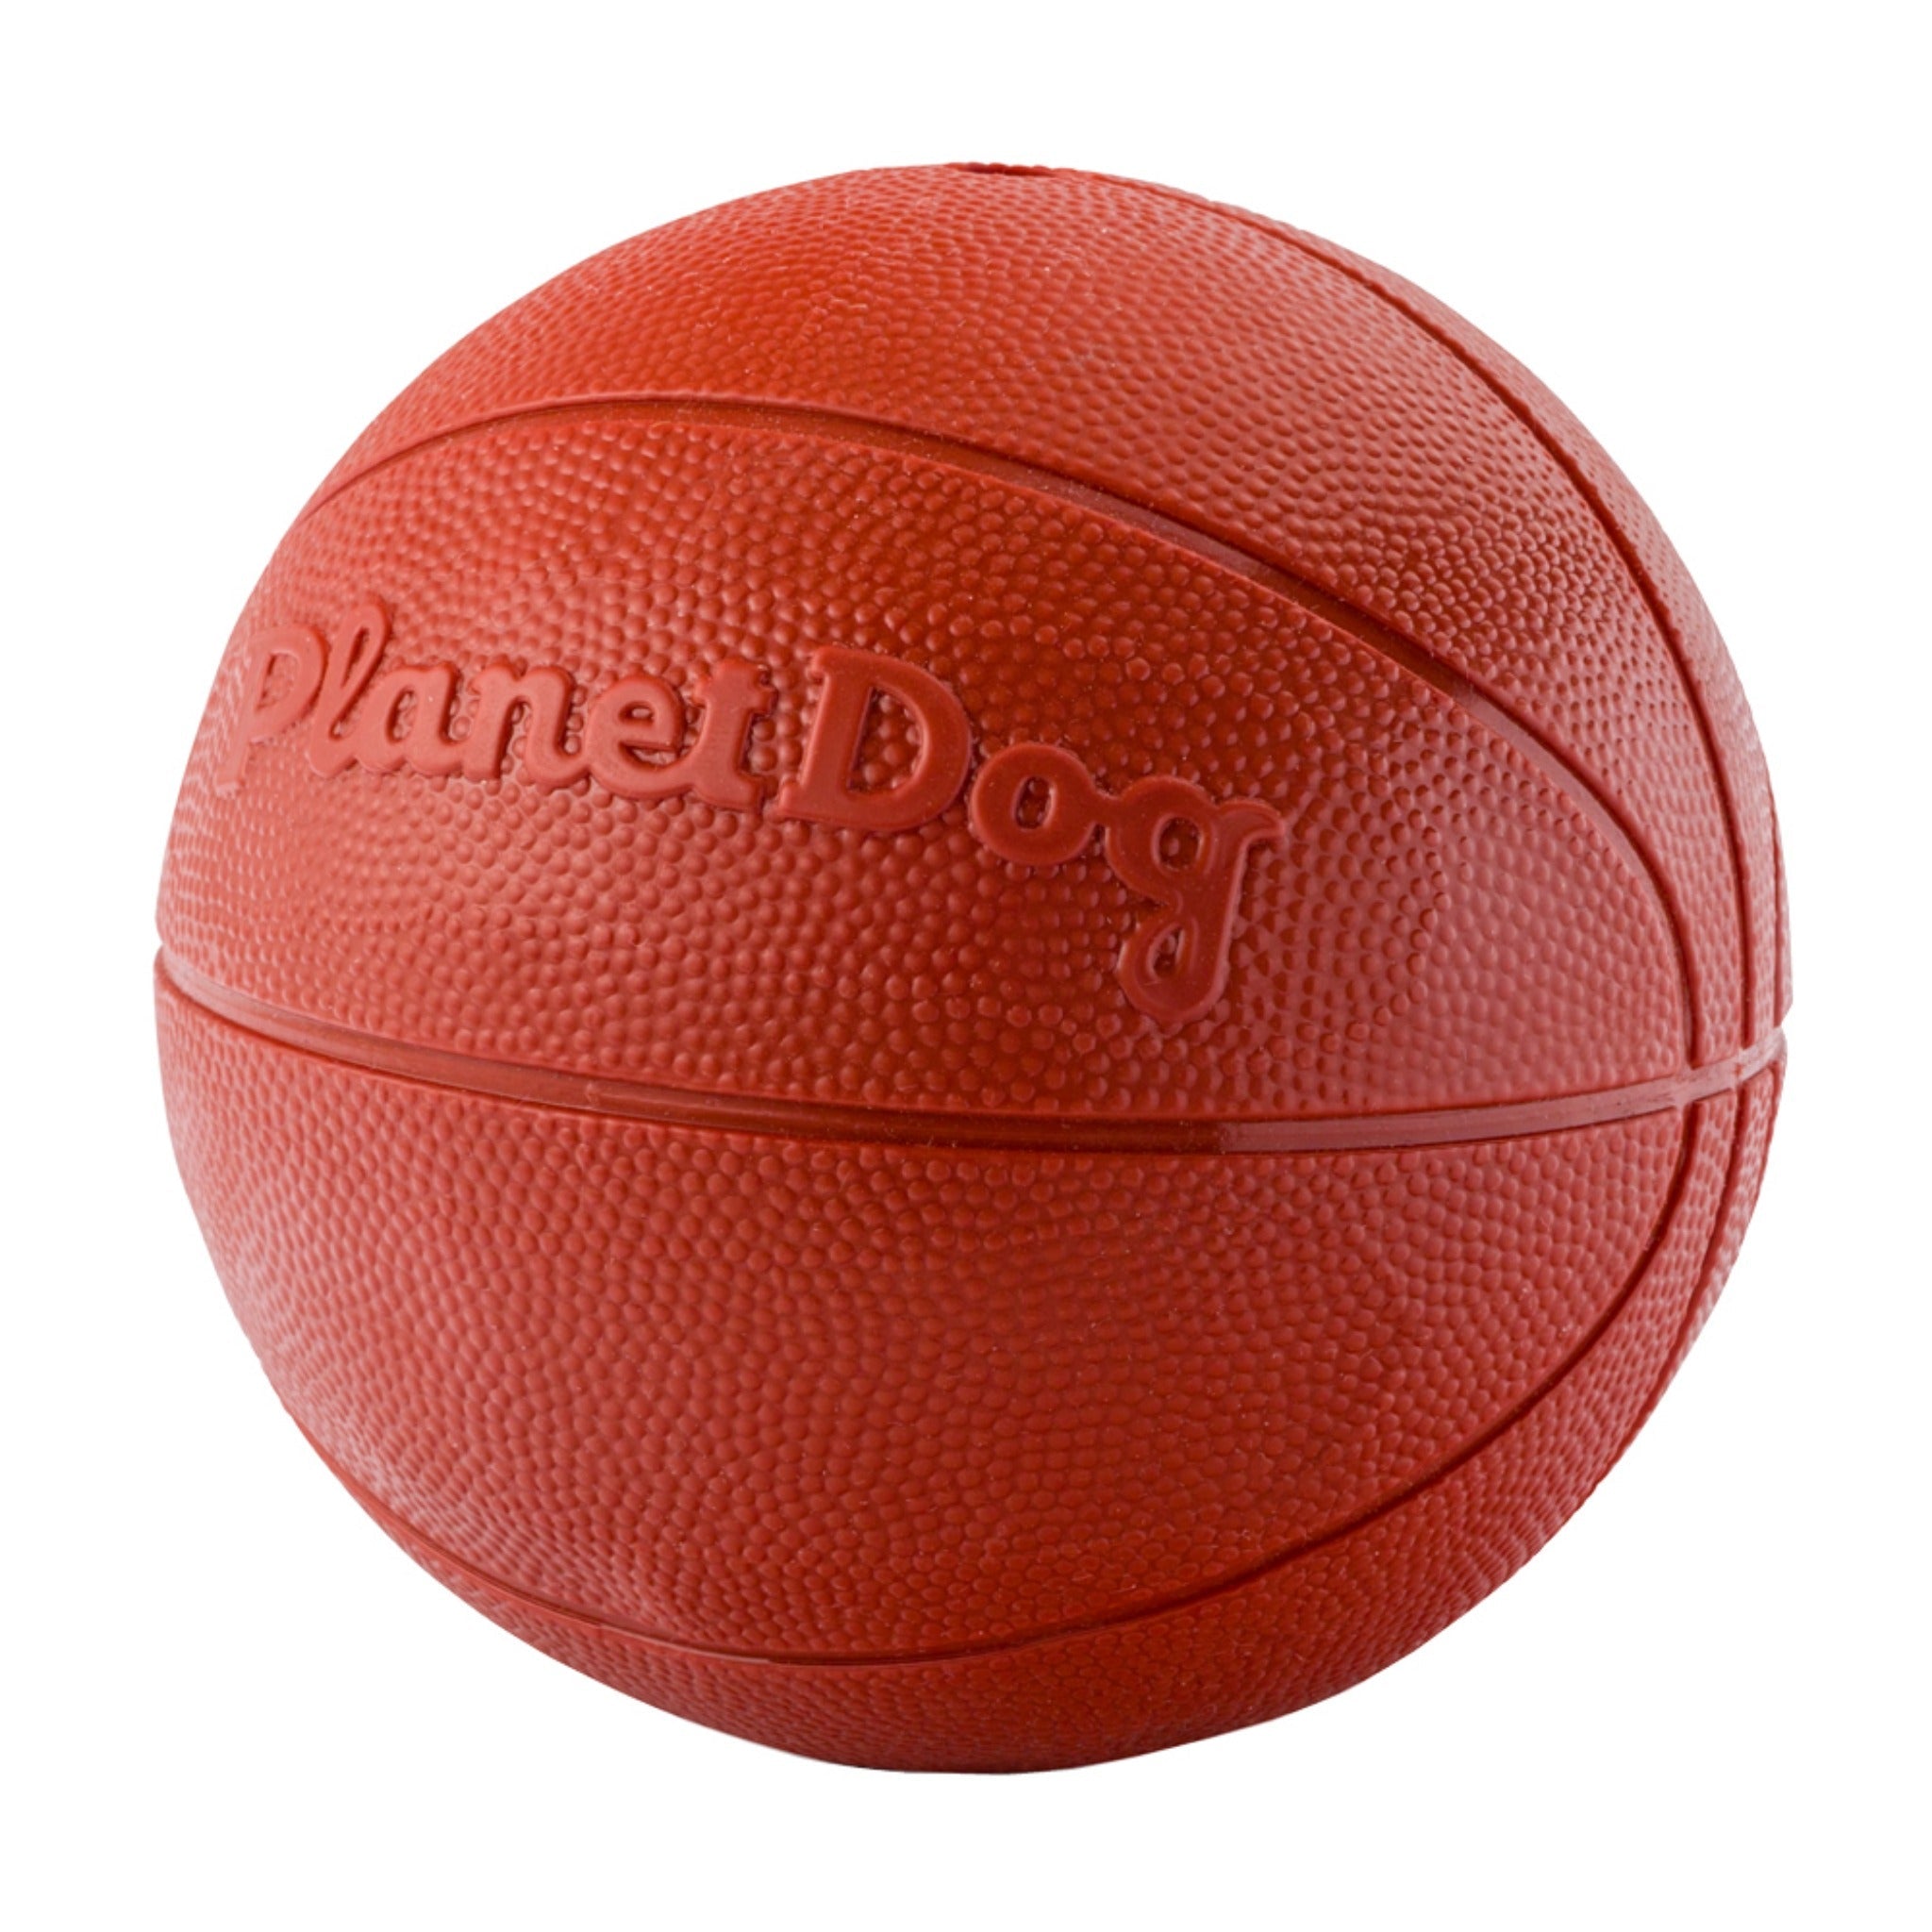 Planet Dog Orbee-Tuff Sport Basketball, Hundespielzeug - Woofshack